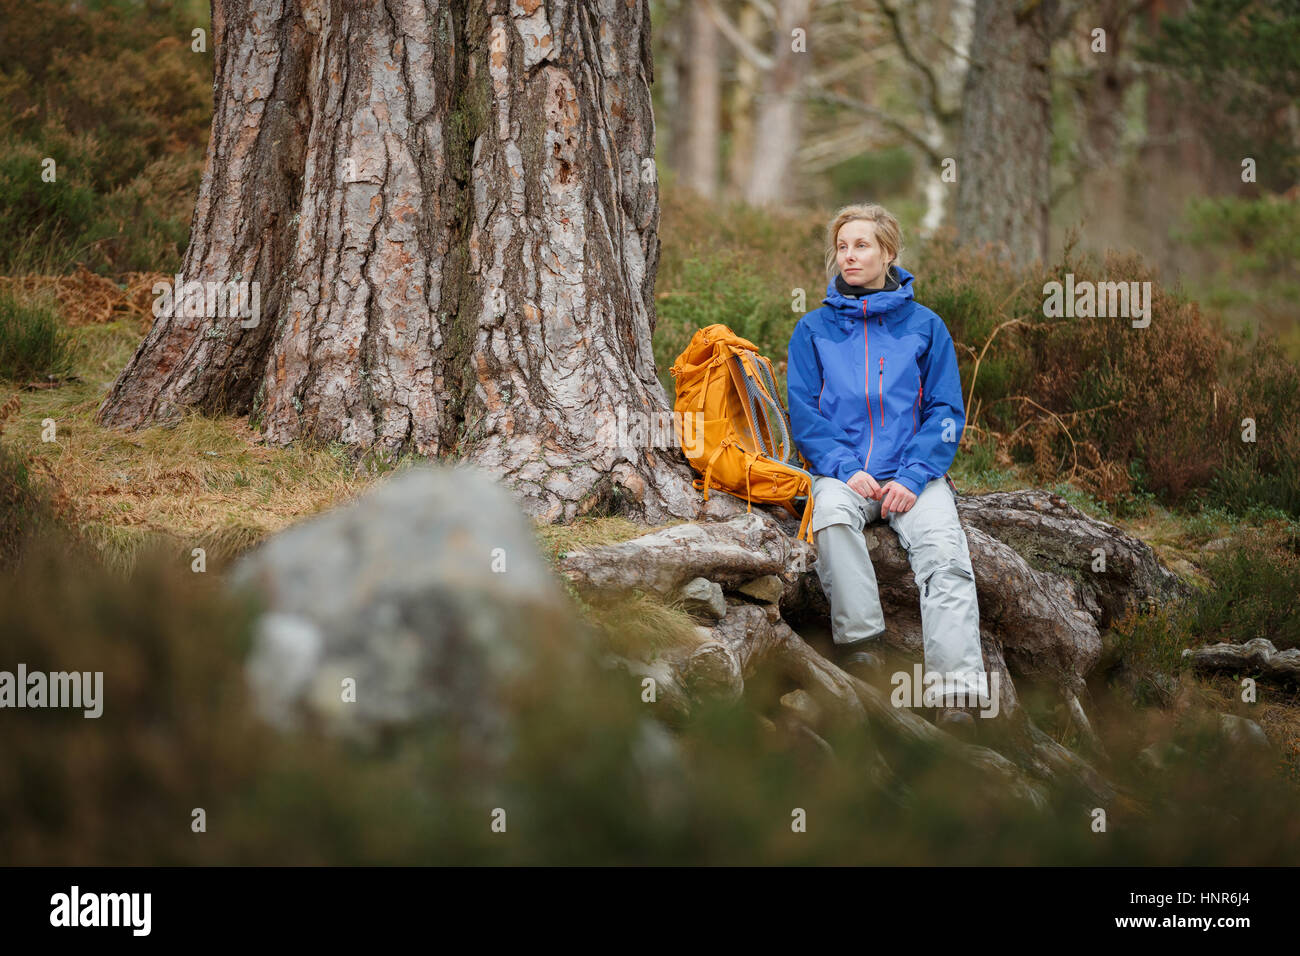 Woman hiking in Scotland Stock Photo